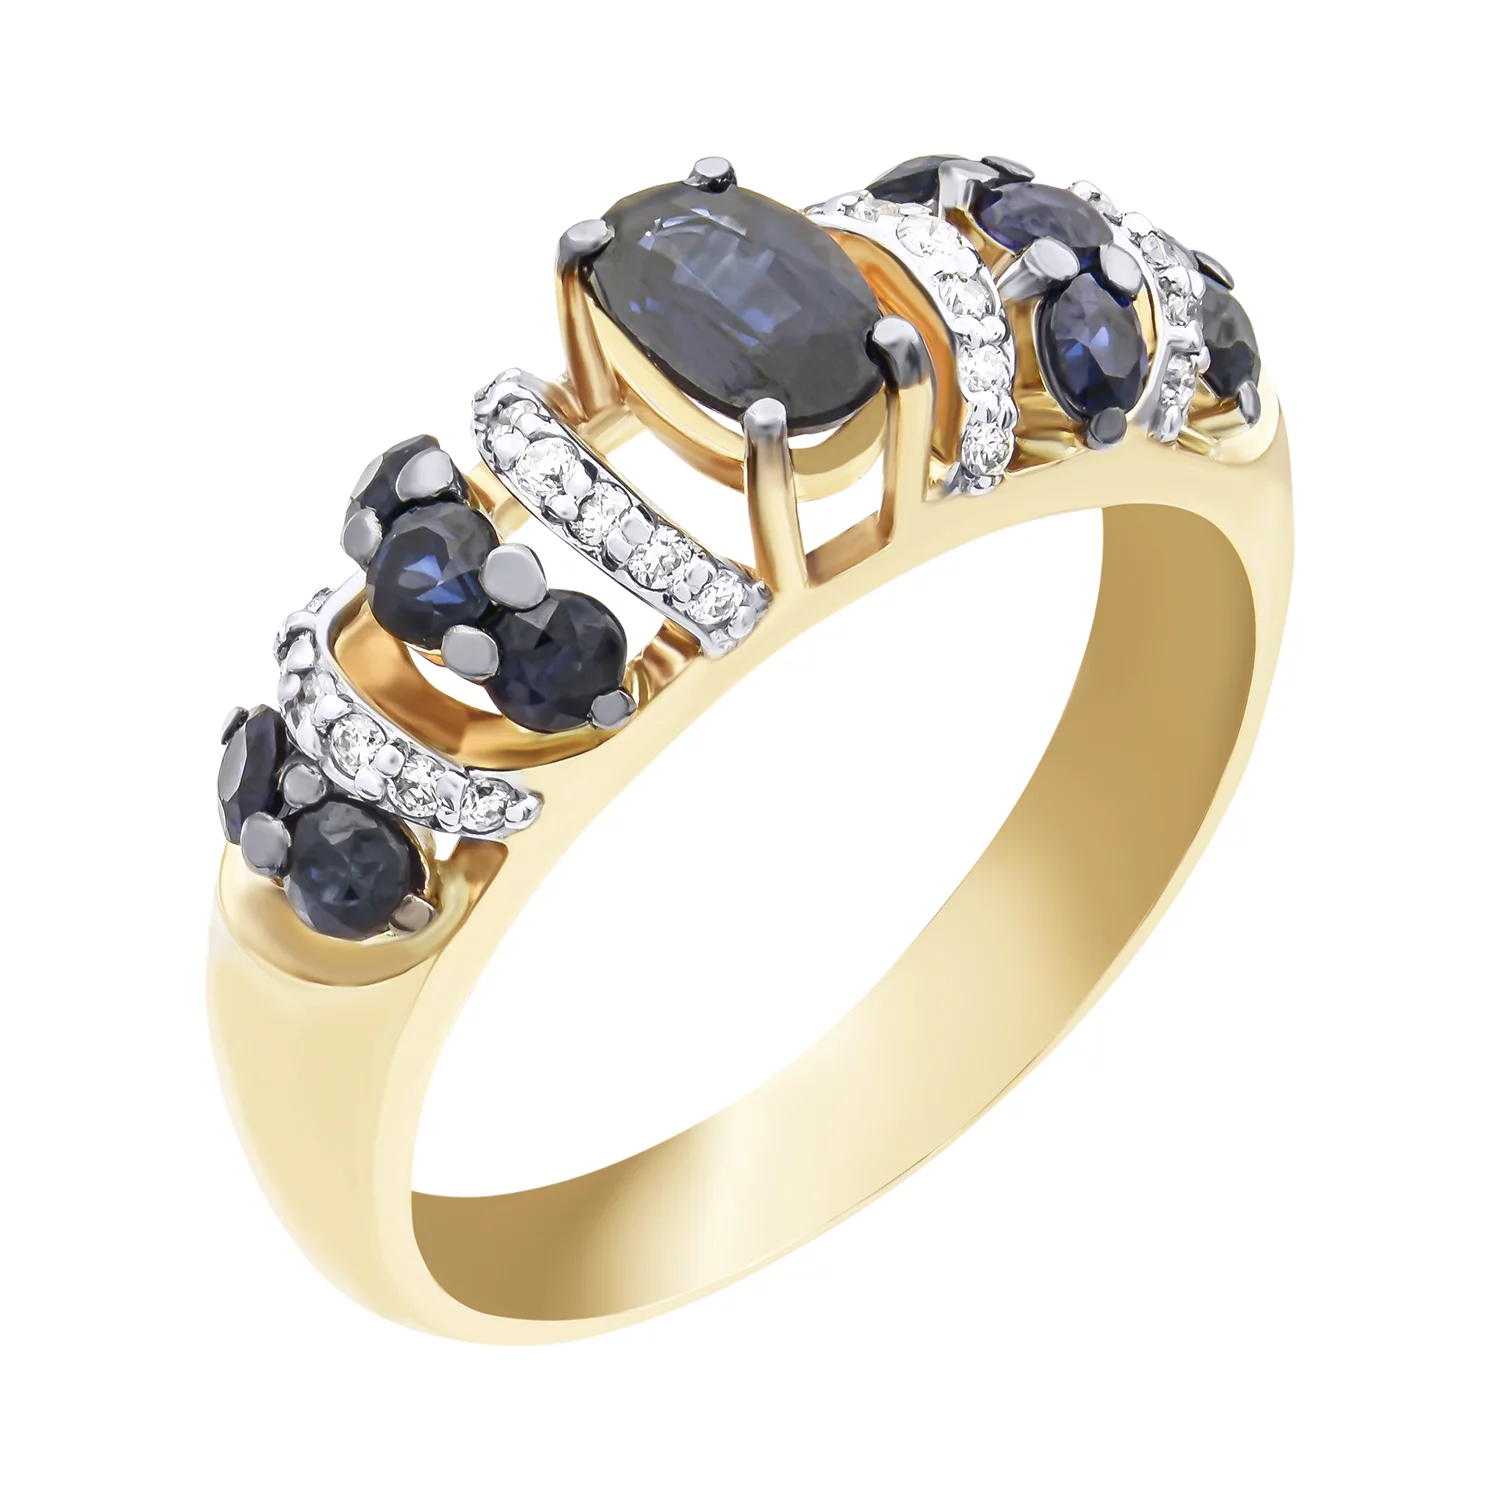 Кольцо золотое с бриллиантами и сапфирами. Артикул К1883с: цена, отзывы, фото – купить в интернет-магазине AURUM